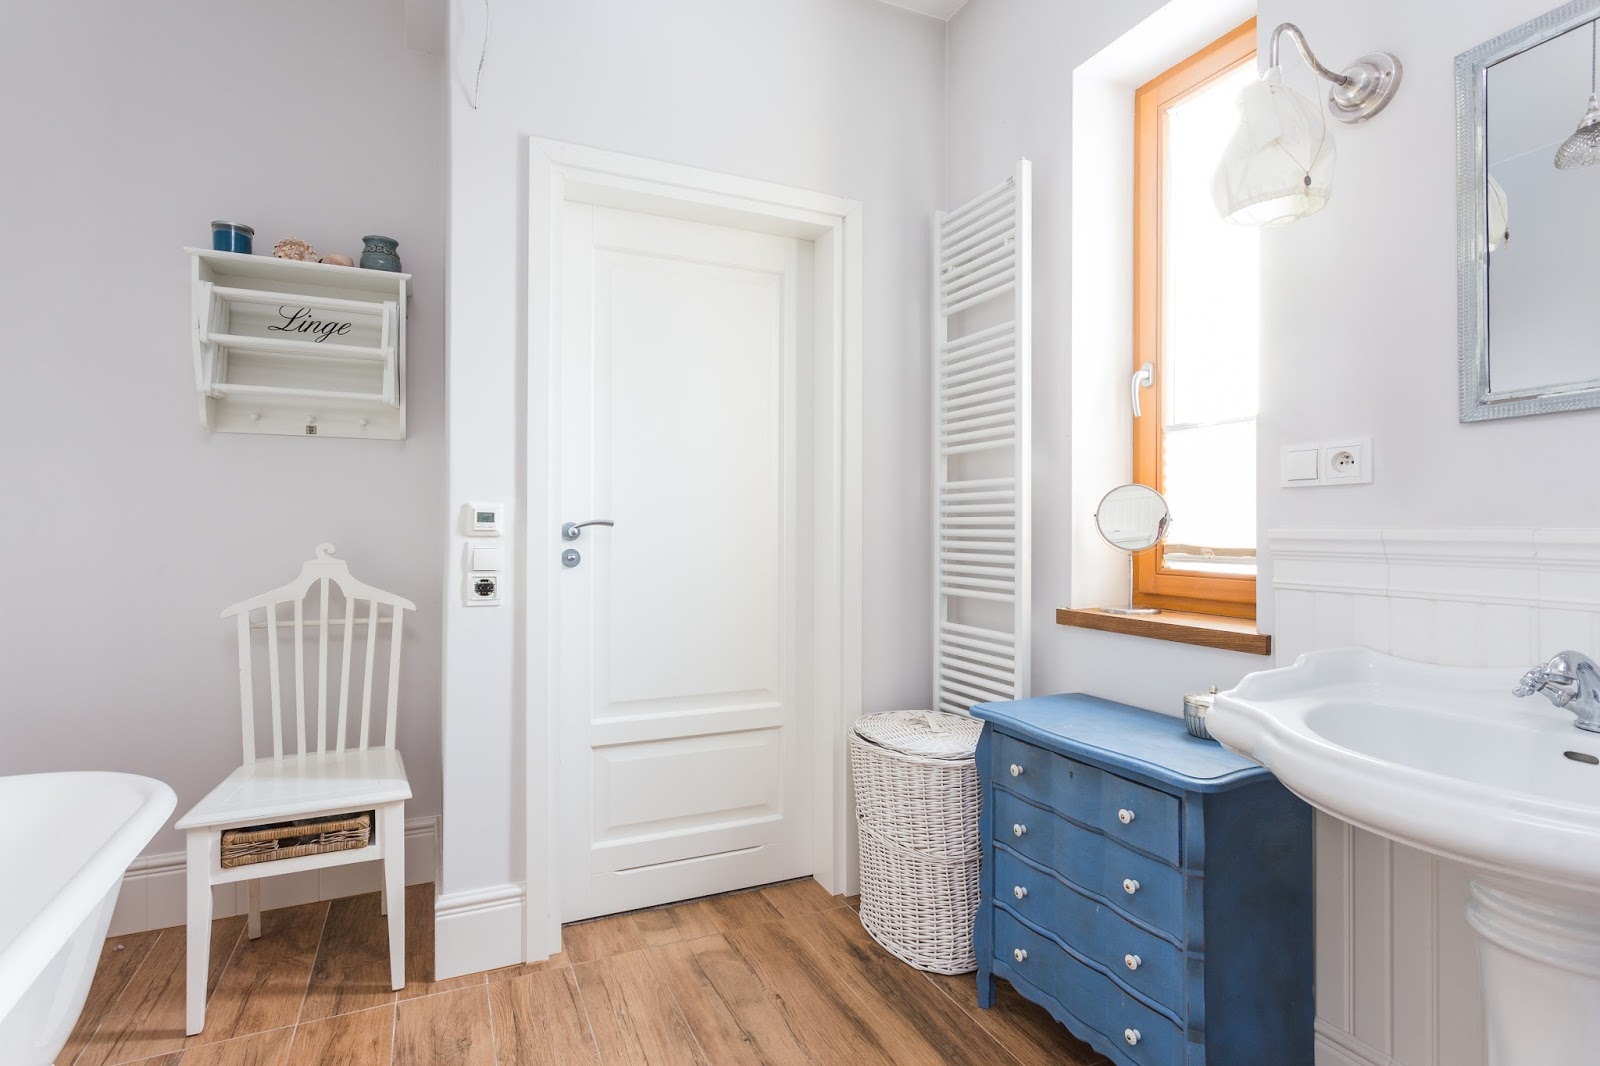 Biała łazienka z niebieskimi dodatkami. Podłoga imitująca drewno oraz wiklinowe dekoracje dodają jej uroku i ocieplają...